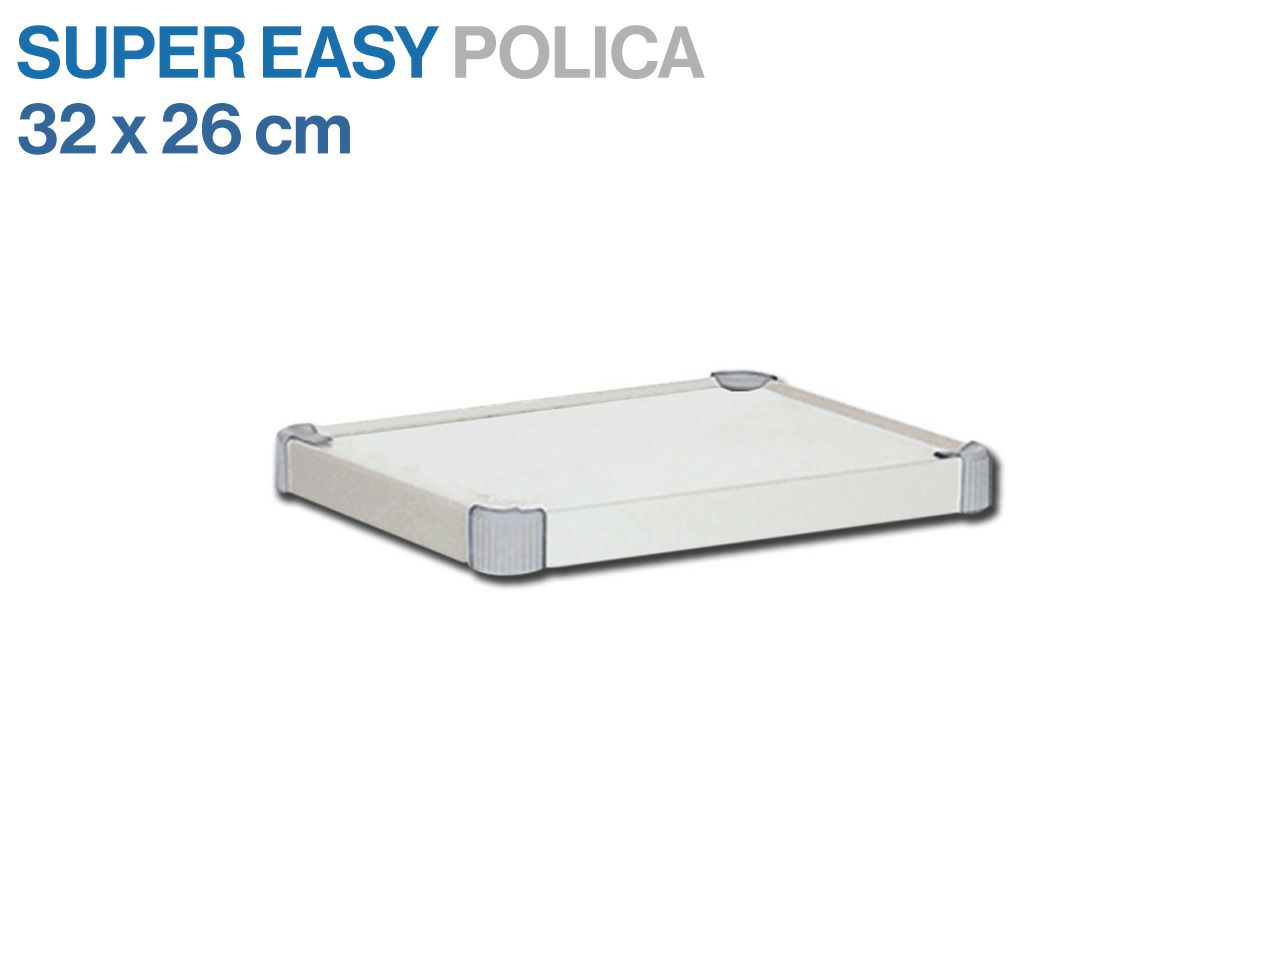 DODATNA POLICA - za Super Easy kolica 27870, 27869 (32x26 cm)
